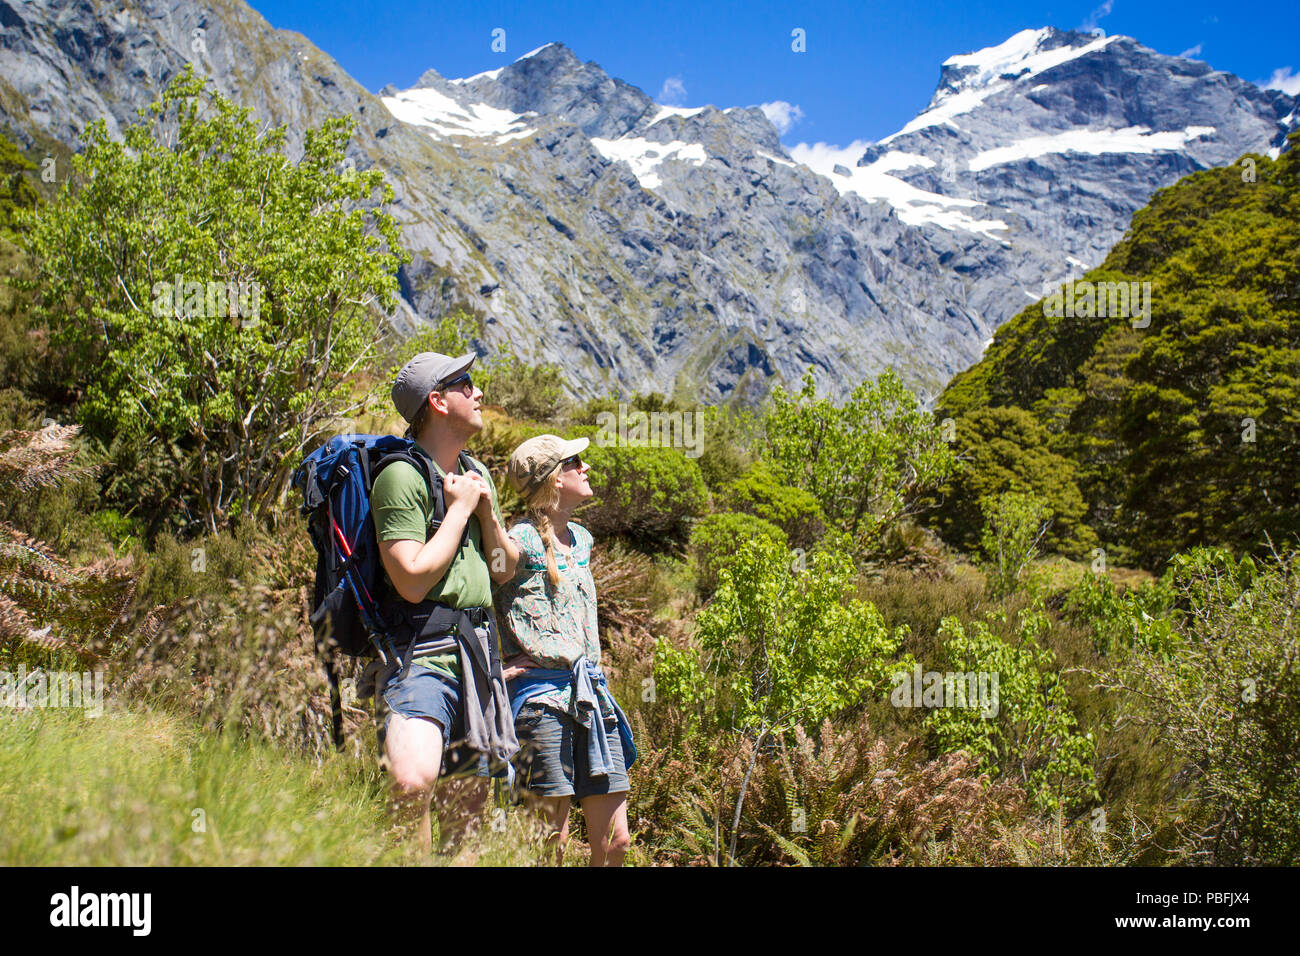 Nuova Zelanda aka Aotearoa, Isola del Sud, Mt Aspiring National Park, Siberia, giovane escursionismo, mountain ammirando le vedute sulla valle. Modello rilasciato. Foto Stock